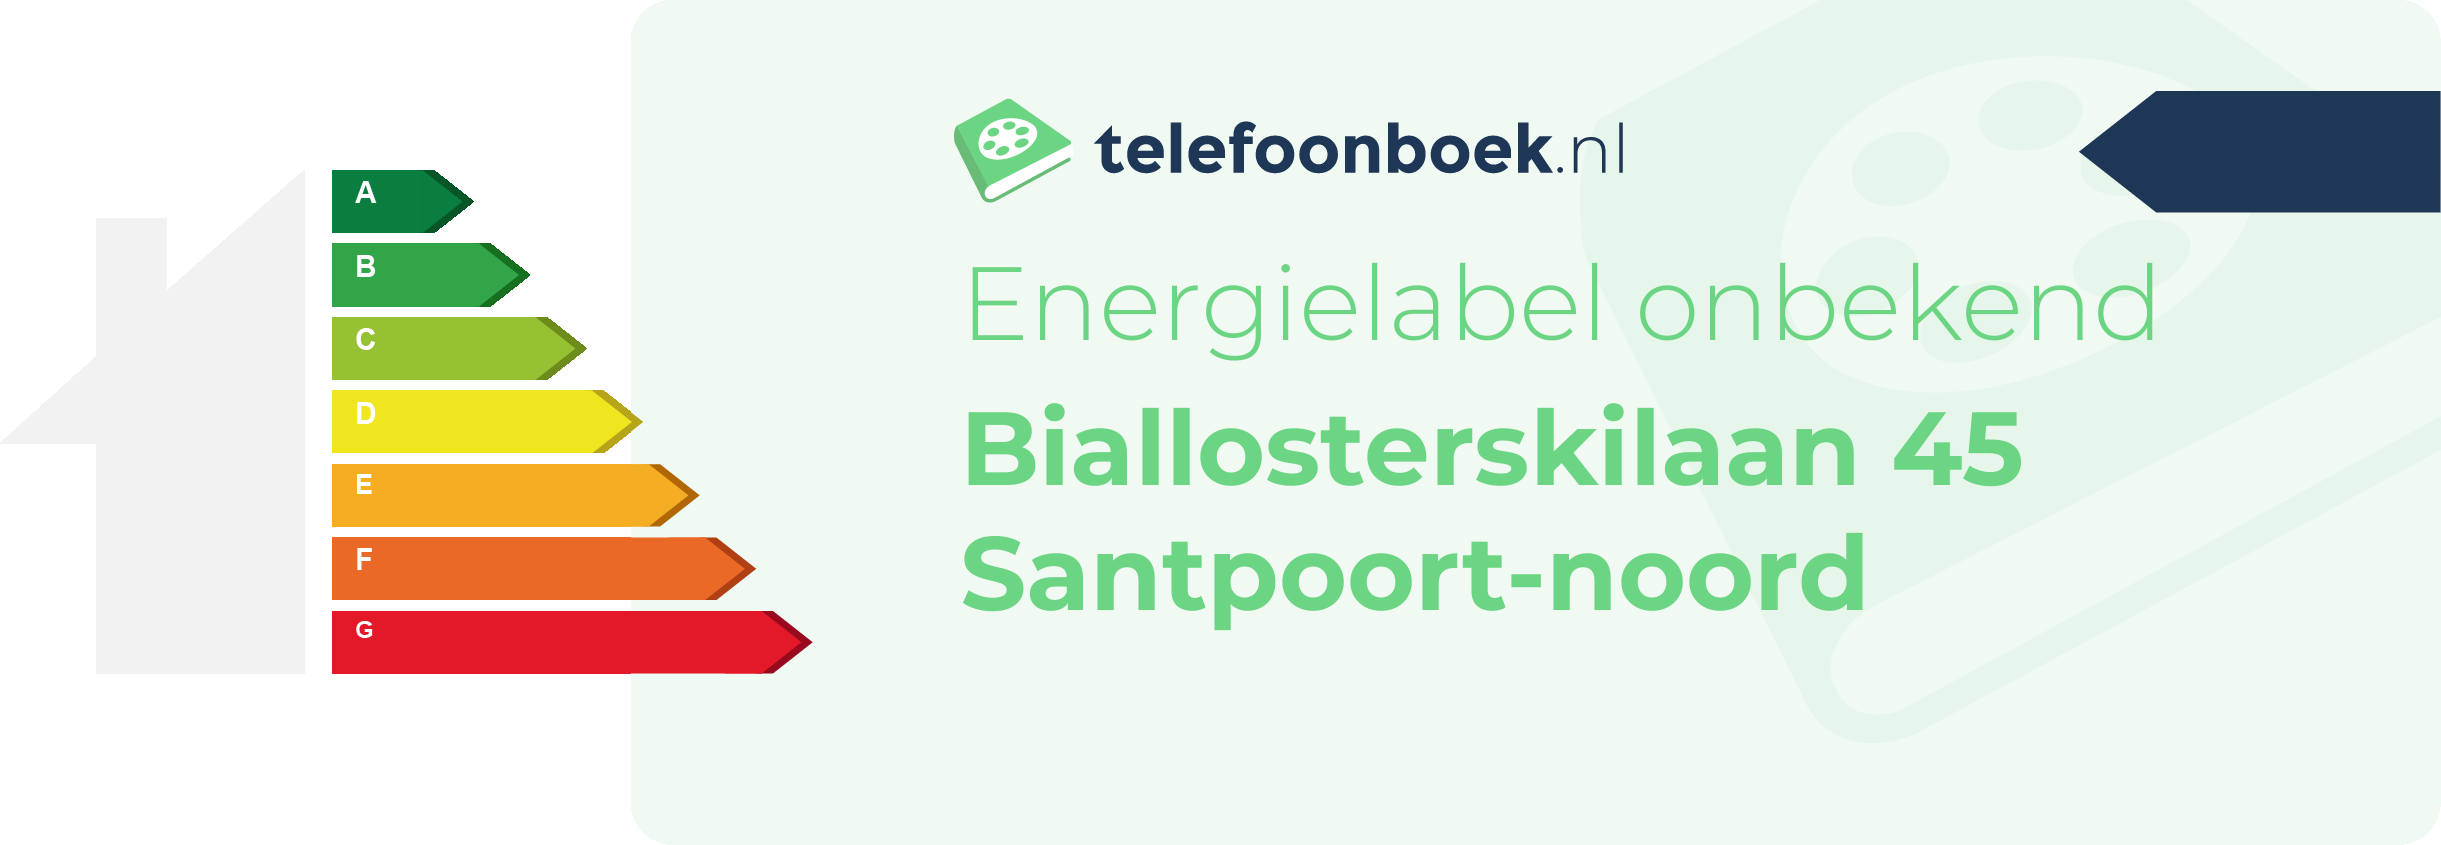 Energielabel Biallosterskilaan 45 Santpoort-Noord